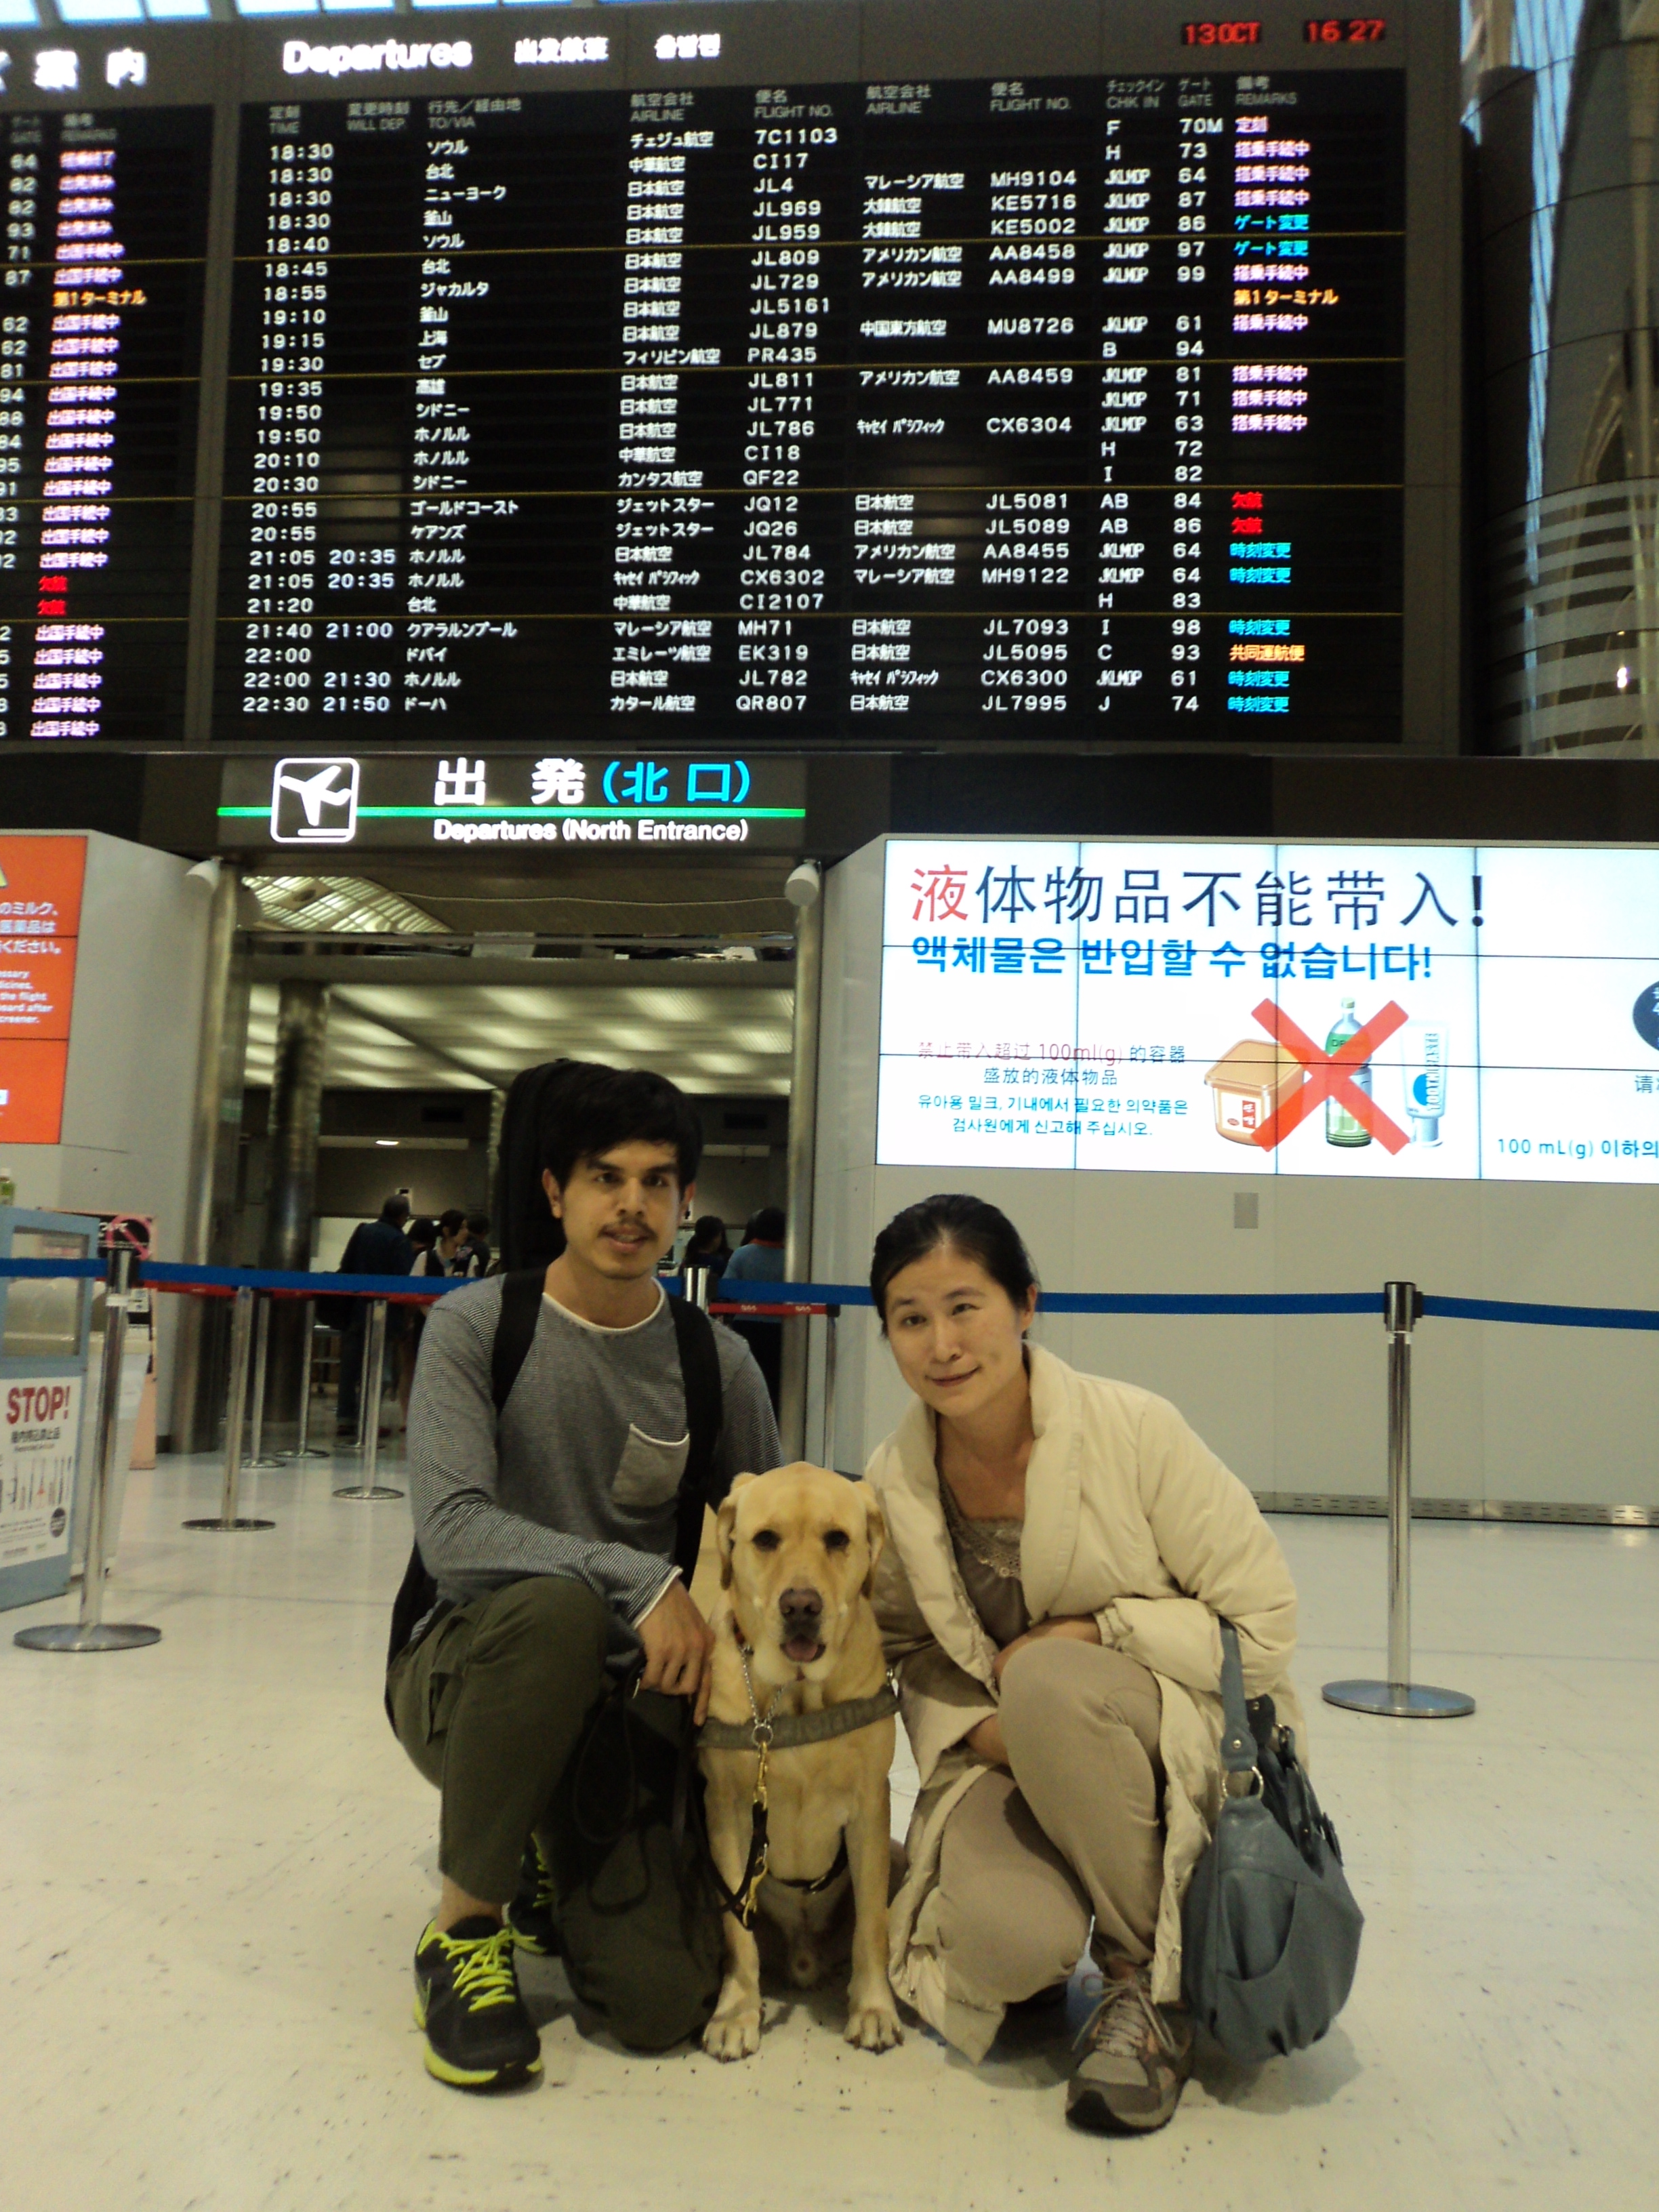 兩人一犬經過冗長的溝通終於突破難關，踏進日本。